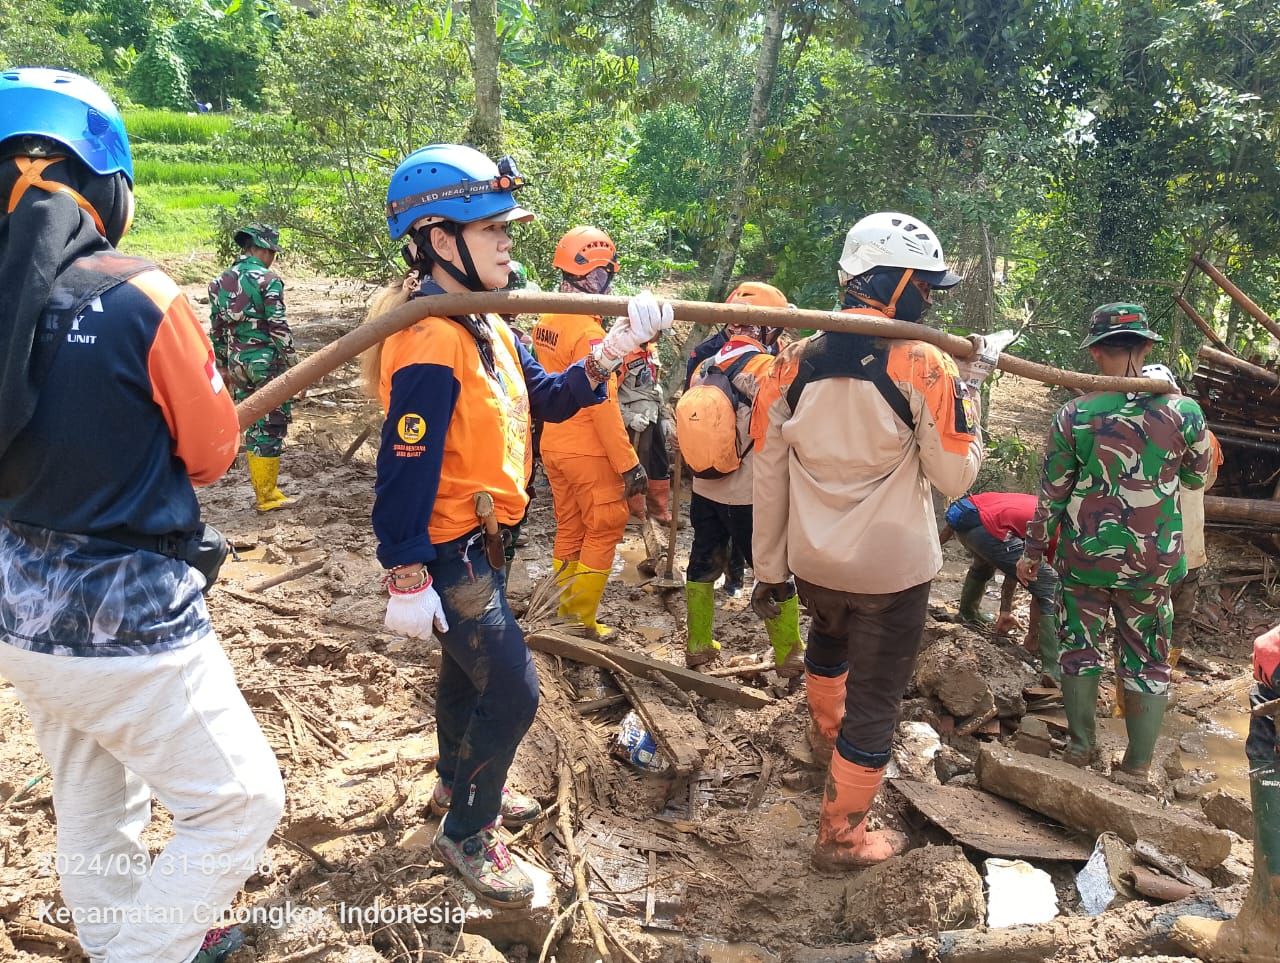 Relawan yang tergabung di Posgab Siaga Bencana Jabar  Bunda Rani Relawan  TRC Teko ( kedua dari kiri ) turut melakukan pencarian korban di lokasi longsor kampung gintung desa cibenda kecamatan cipongkor kbb